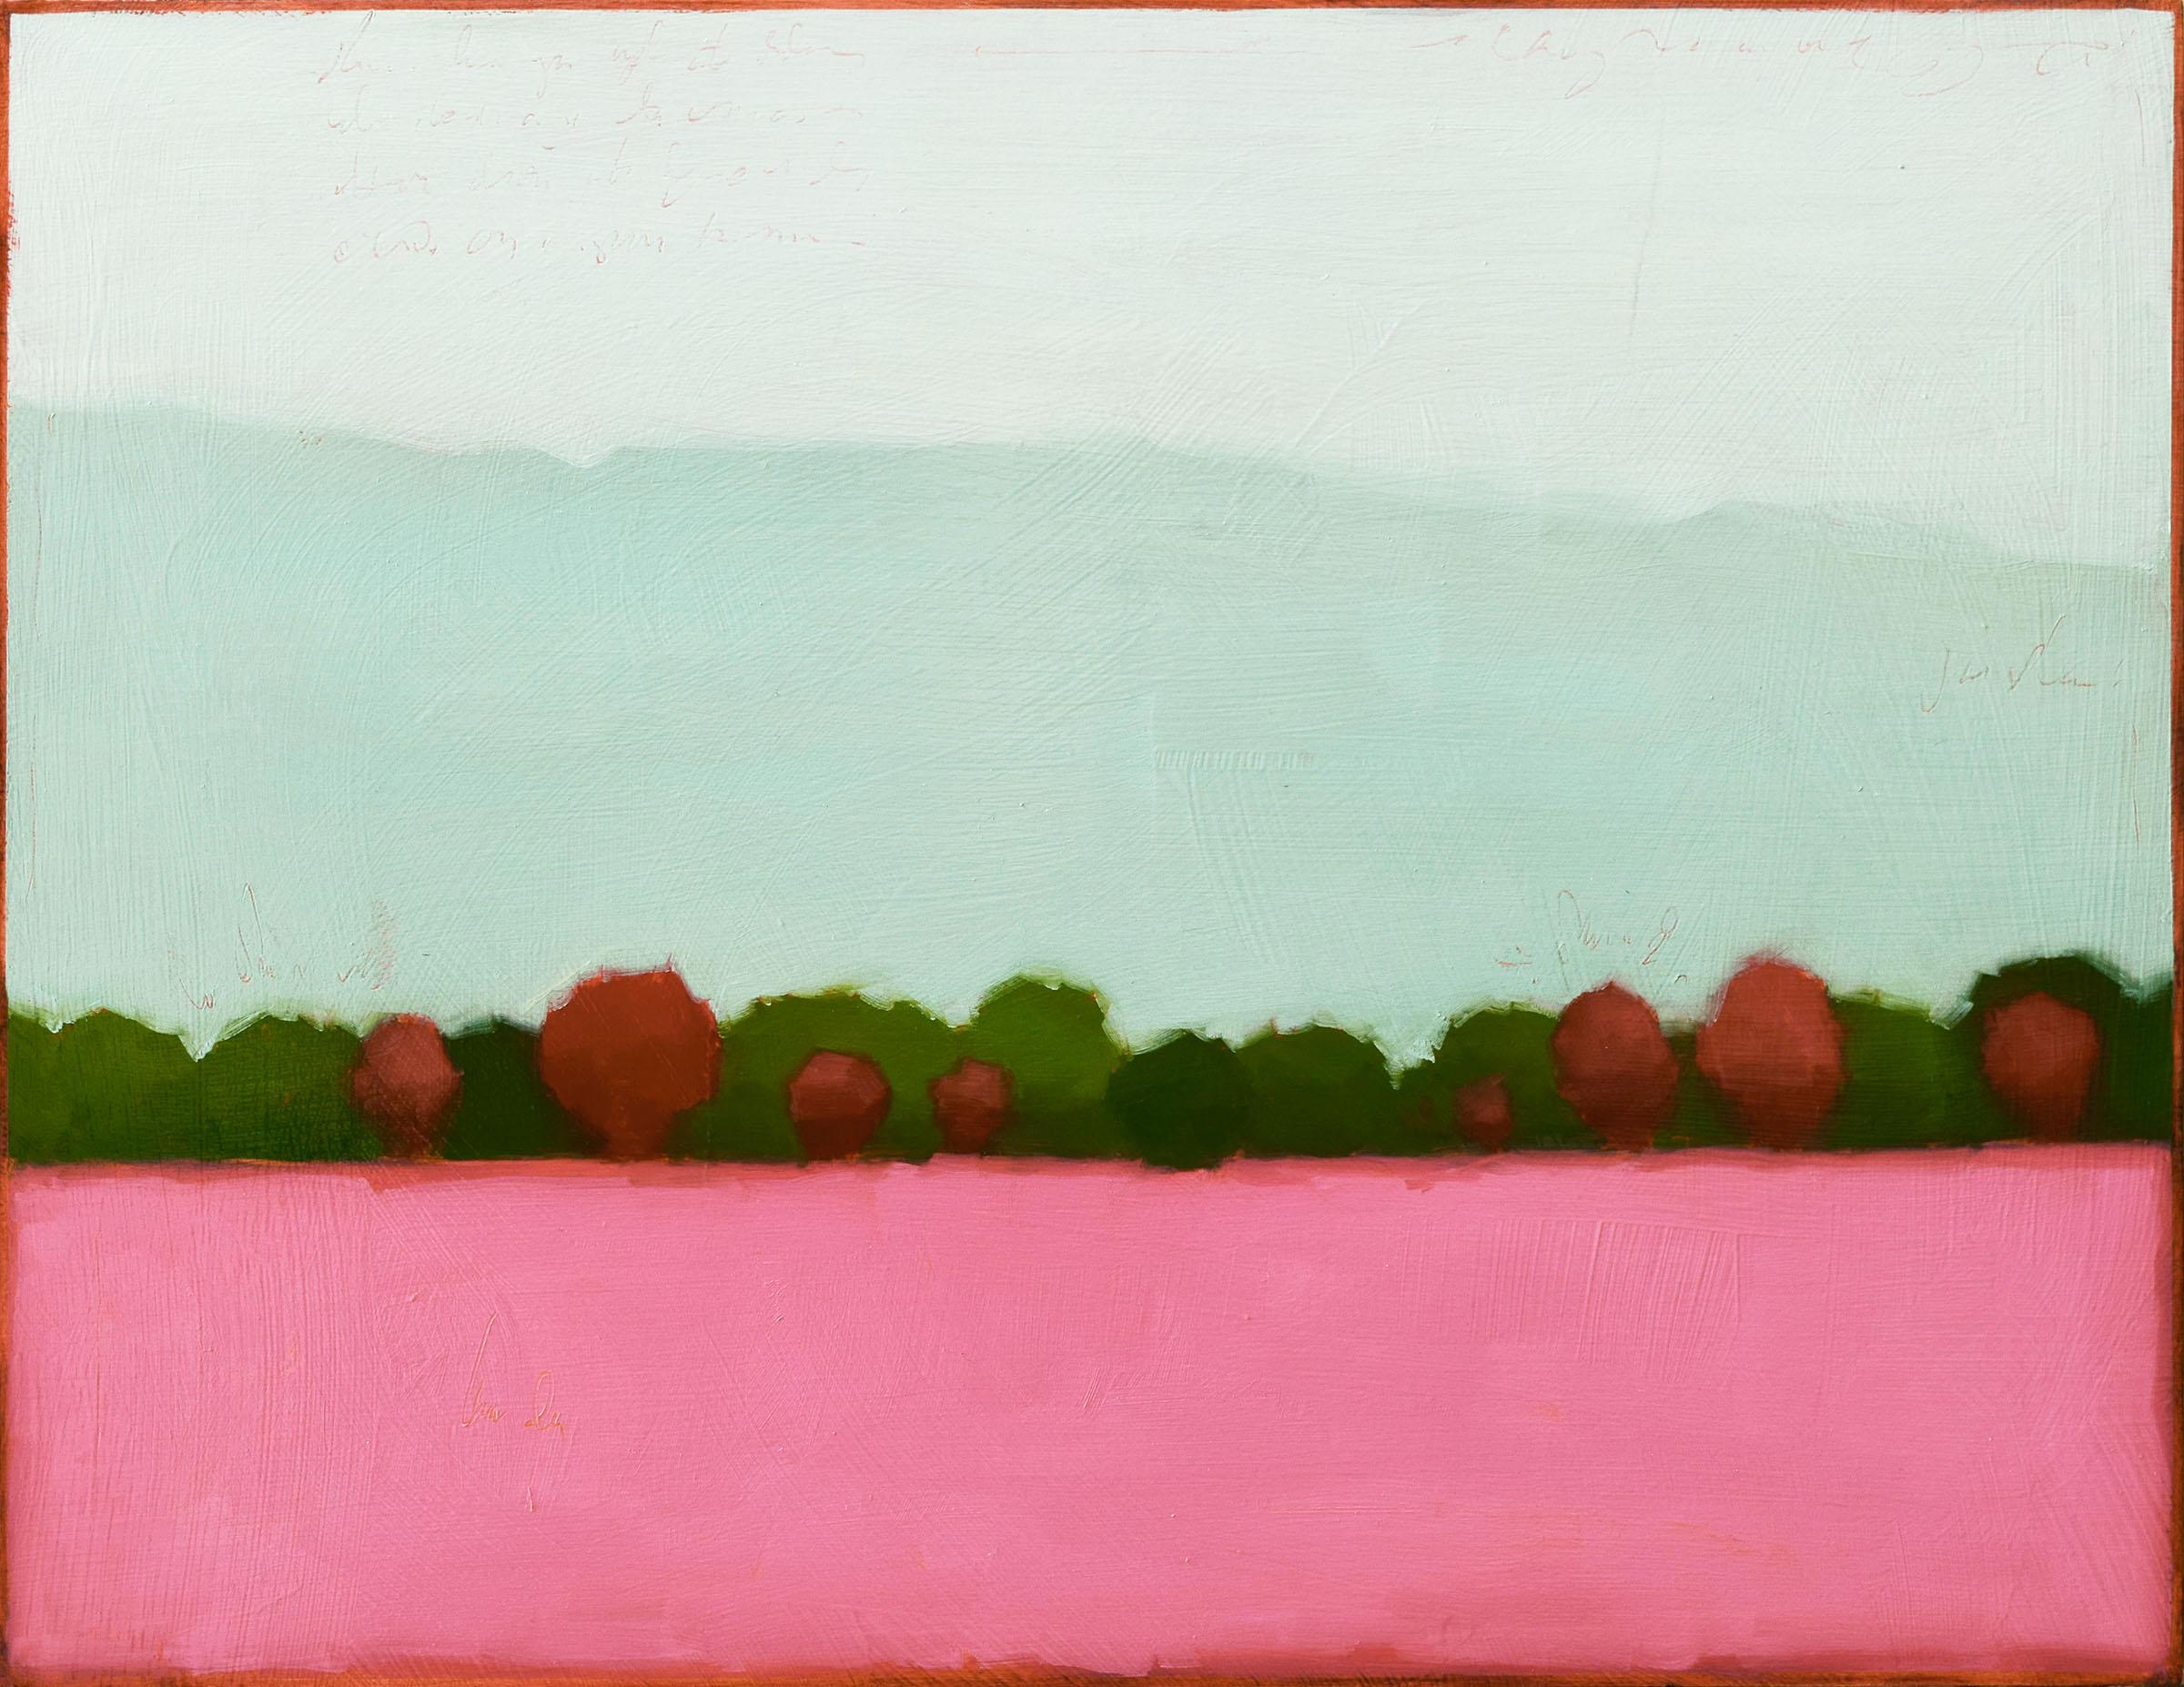 Tracy Helgeson Abstract Painting – Farbfeld 608 (Zeitgenössisches Landschaftsgemälde, Baumlinie jenseits des rosafarbenen Feldes)